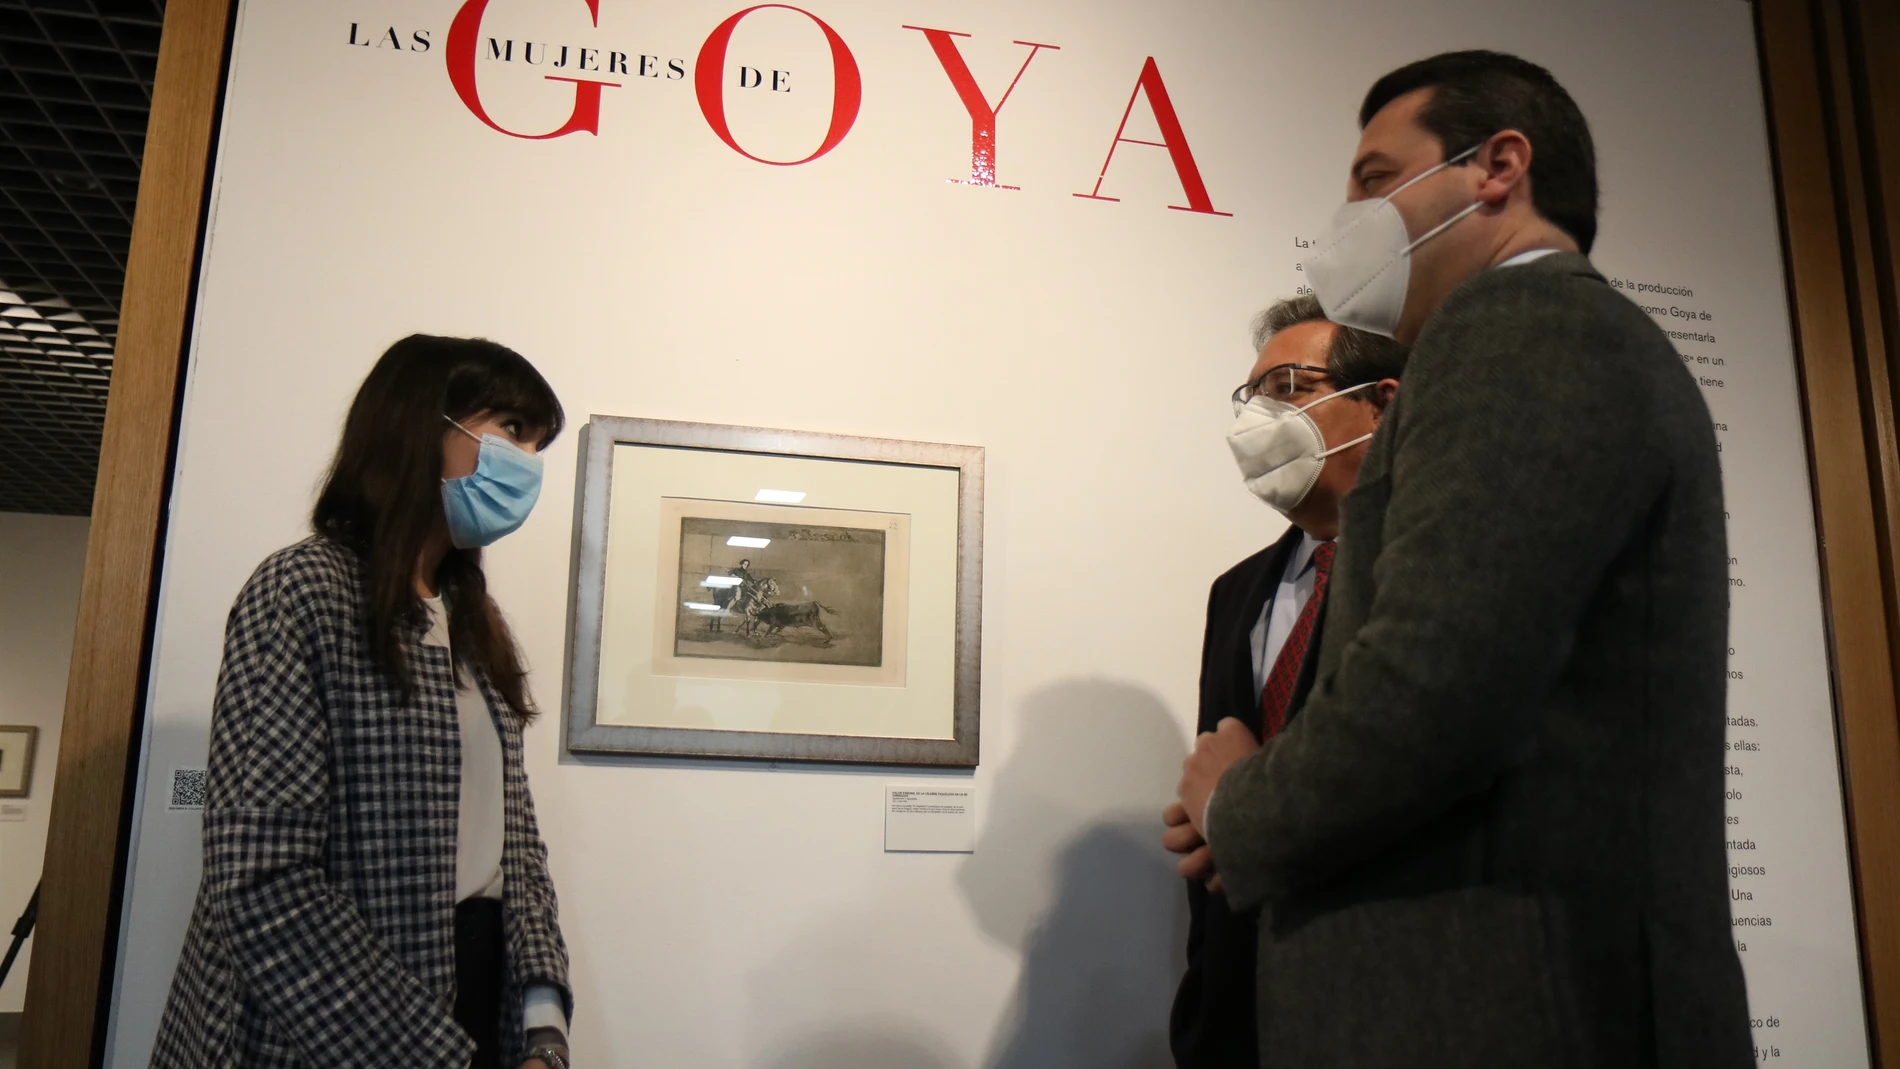 Antonio Pulido, José María Bellido y María Toral en la inauguración de la exposición 'Las mujeres de Goya' en la sede de la Fundación Cajasol en Córdoba